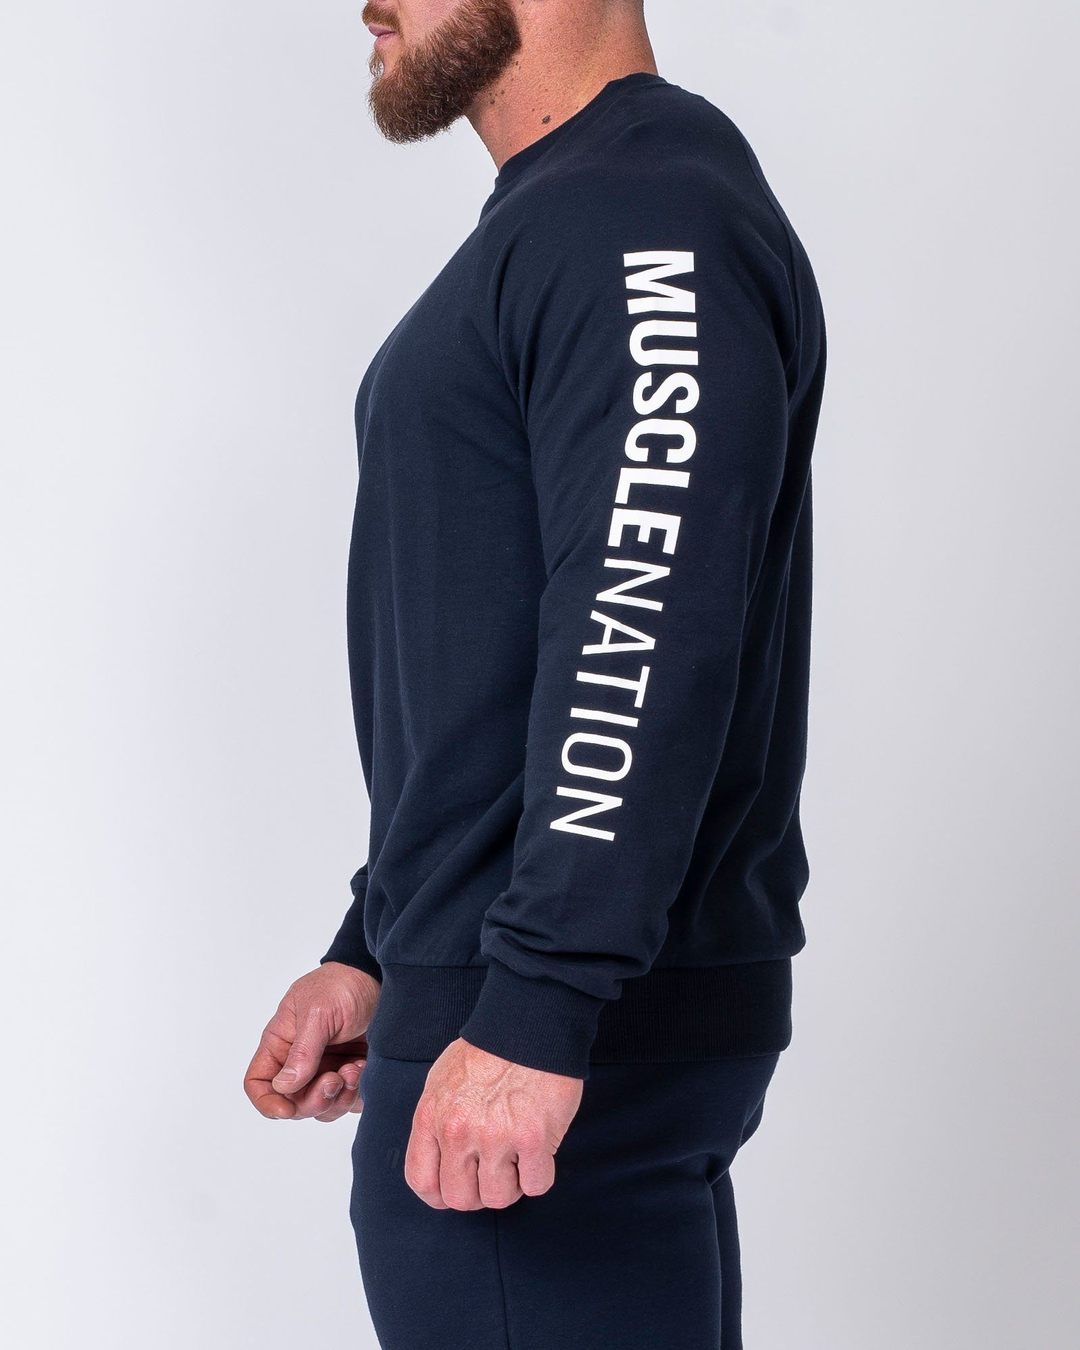 musclenation Mens Lightweight Long Sleeve - Navy